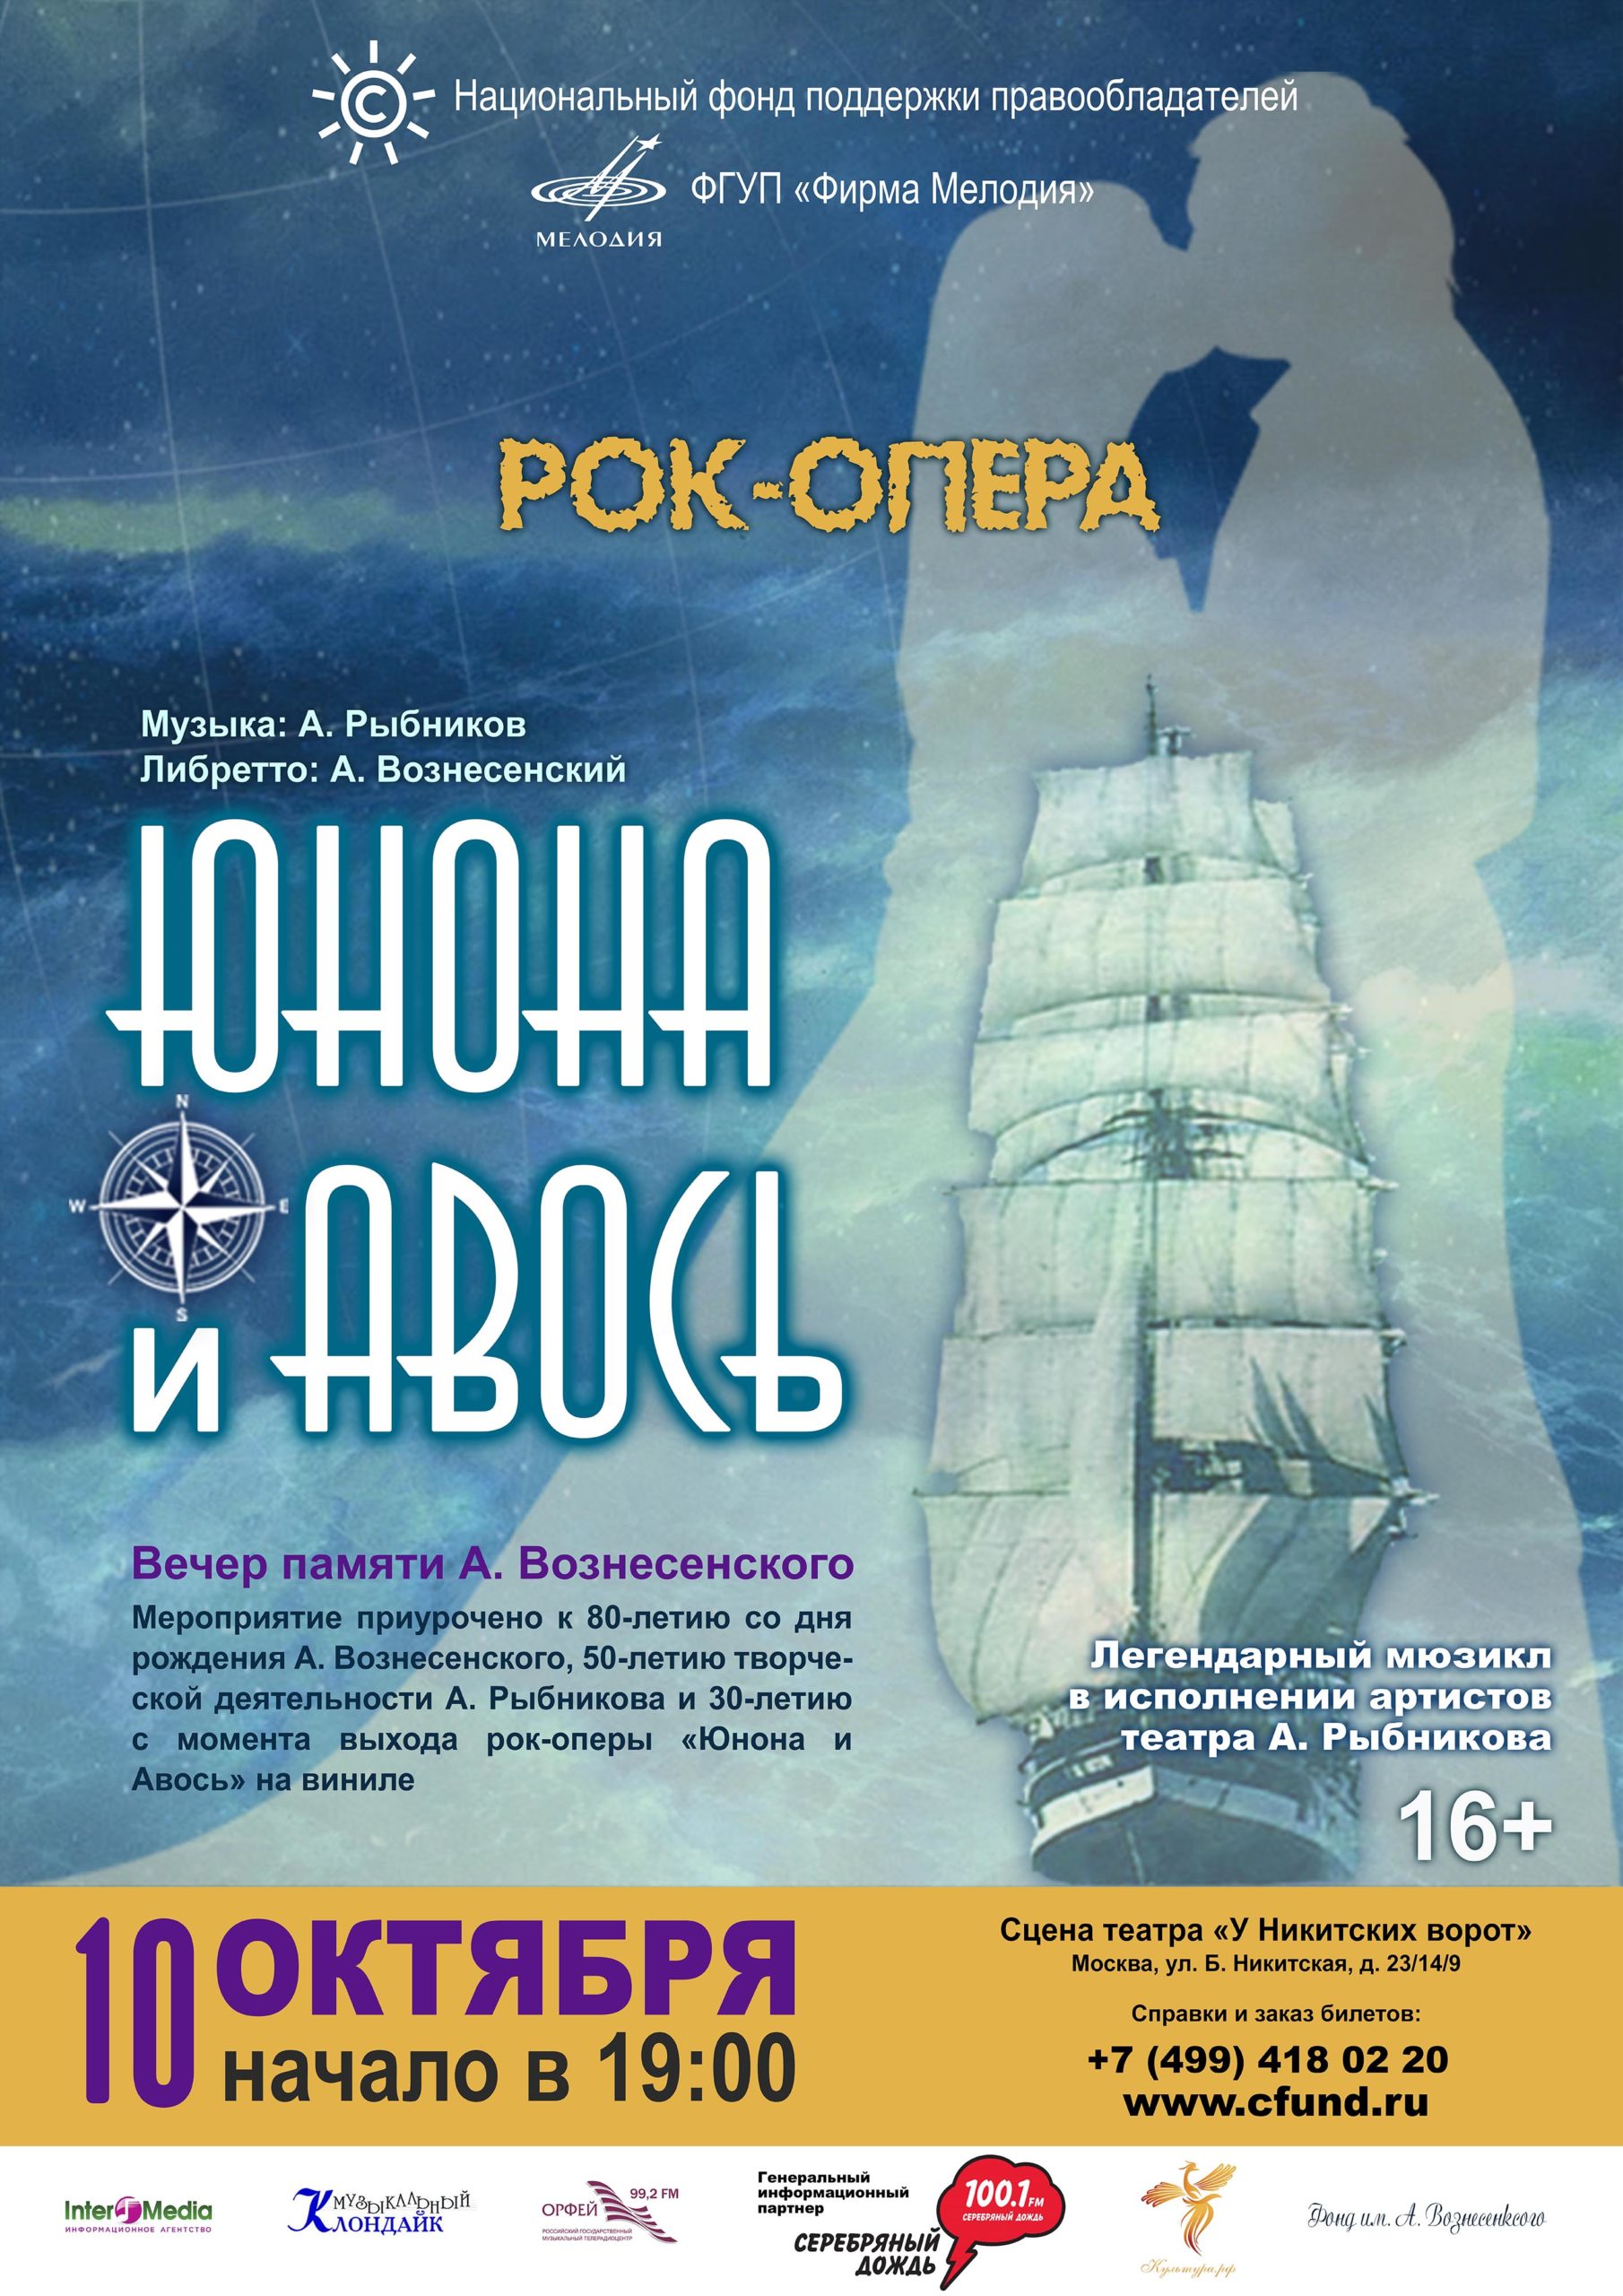 НФПП организует вечер памяти Андрея Вознесенского и показ мюзикла «Юнона и Авось»